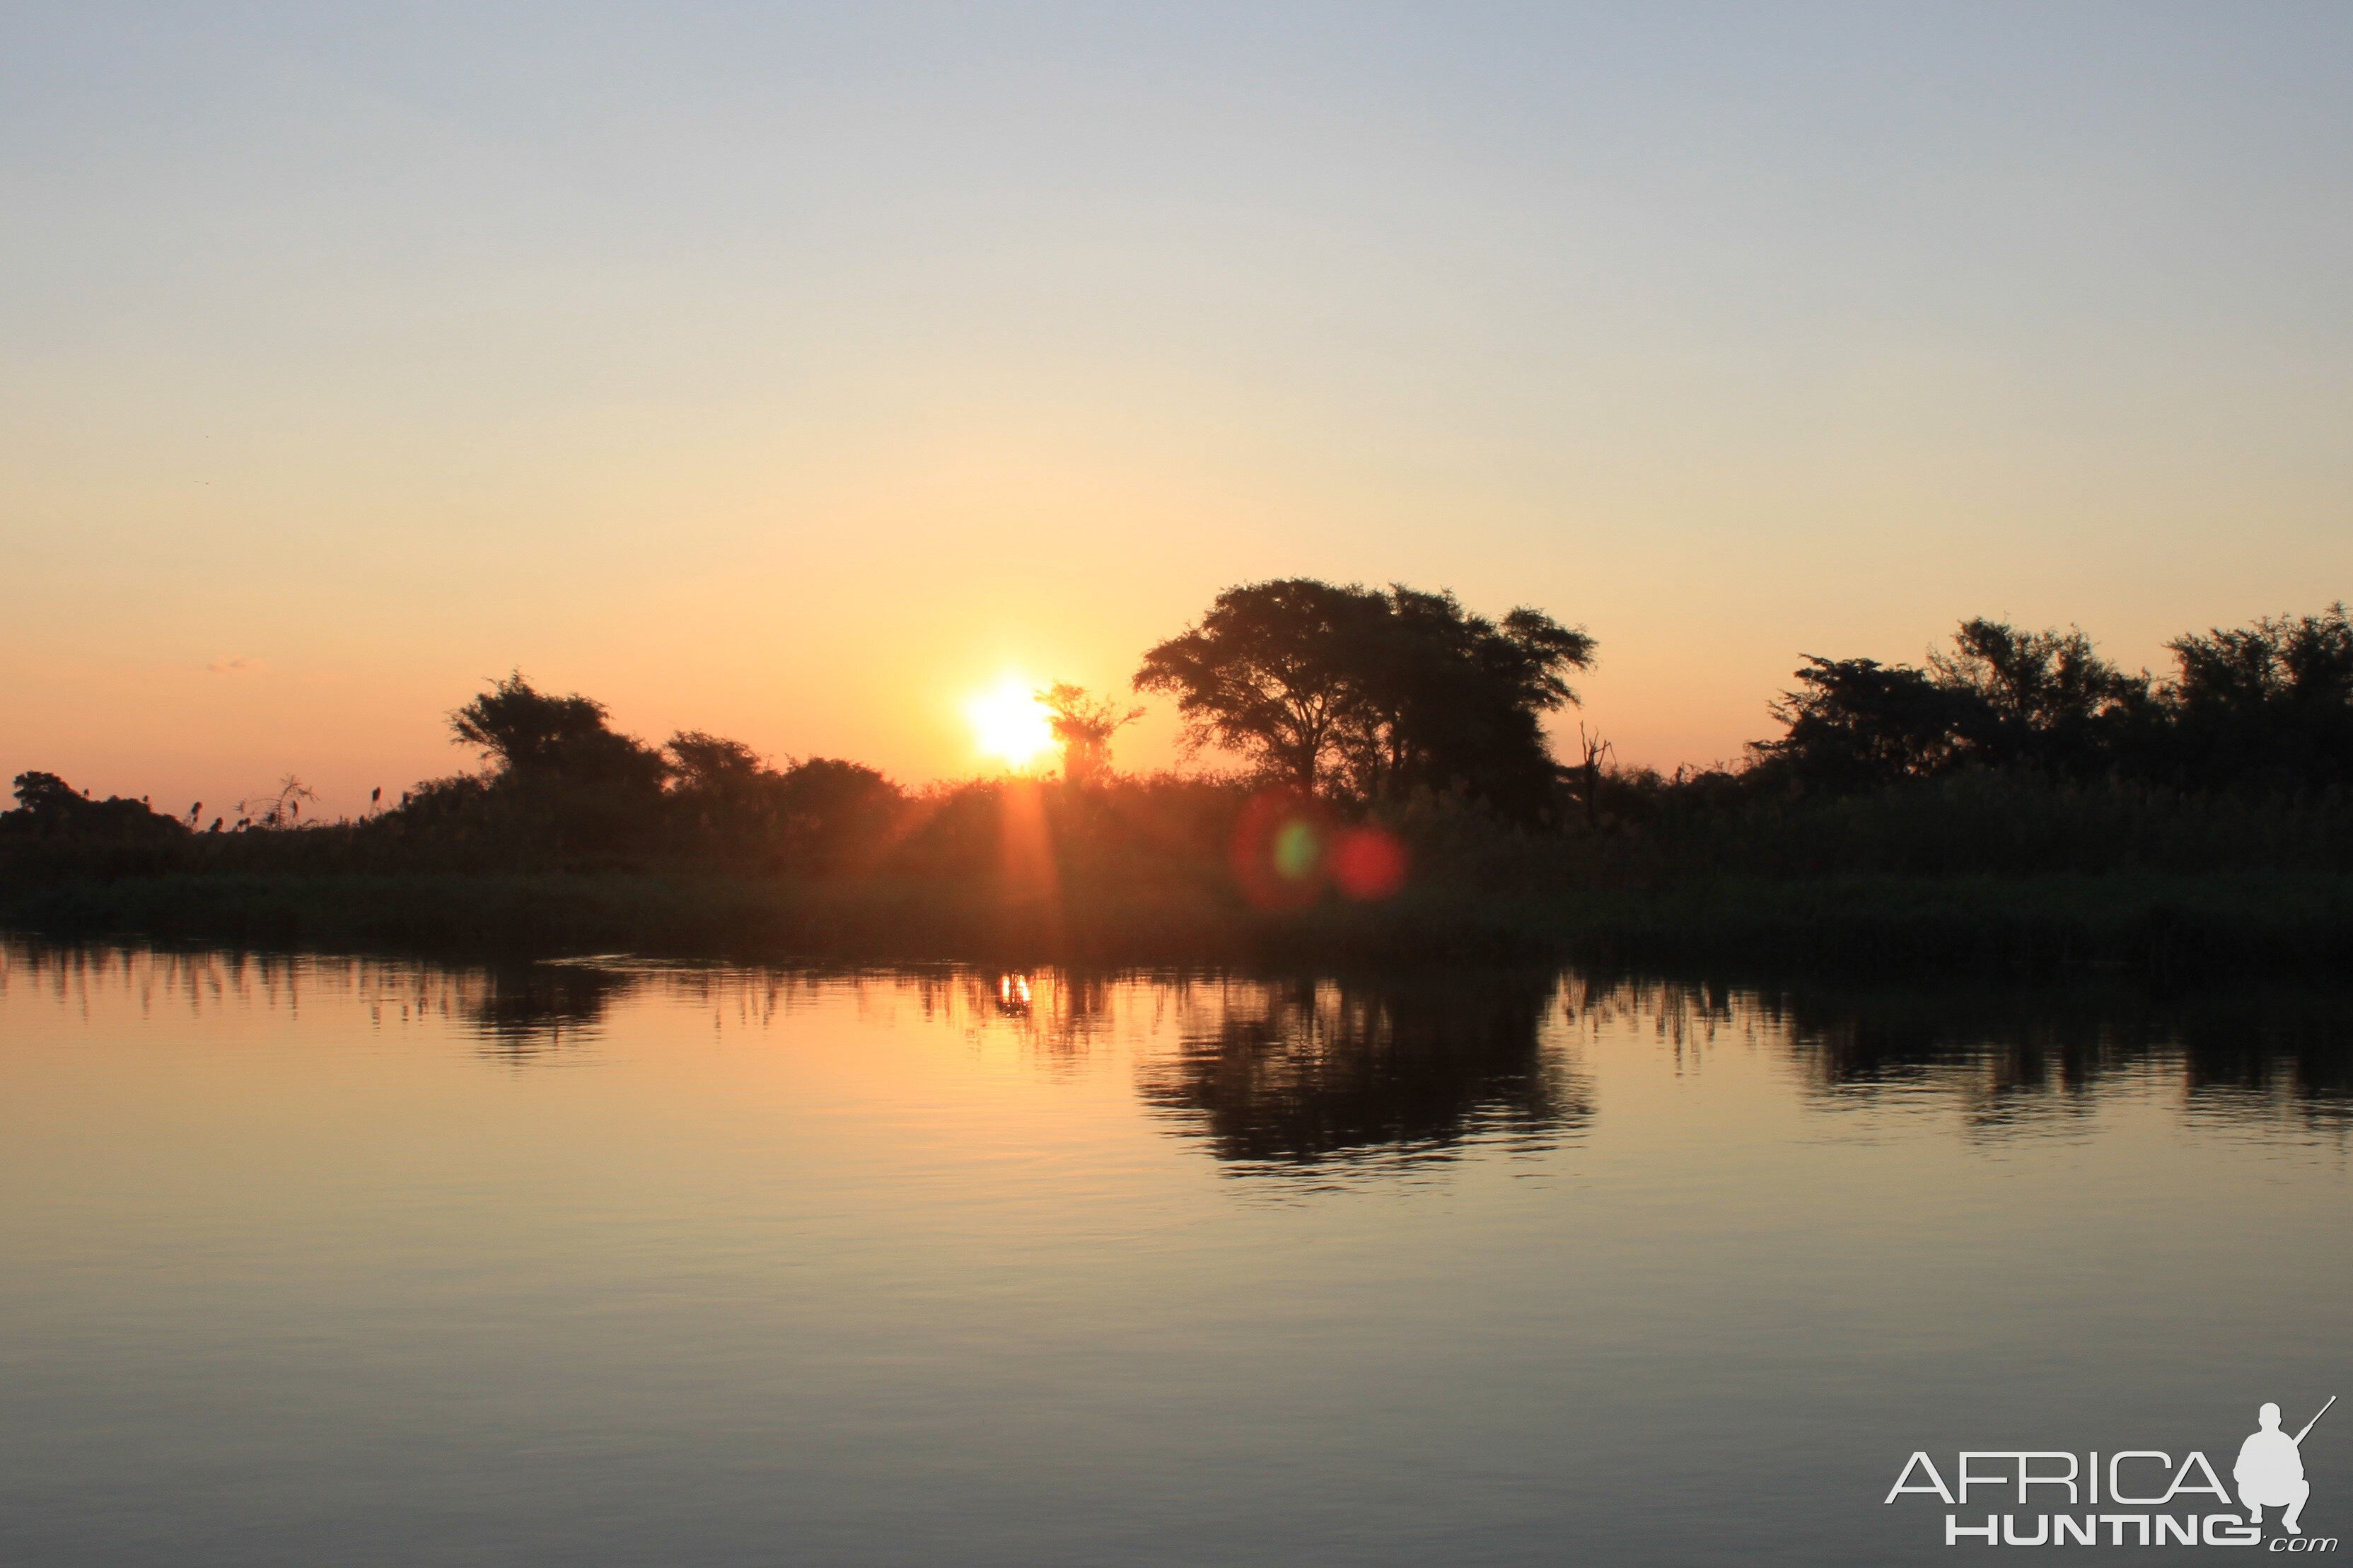 Another Beautiful sunset on the Zambezi